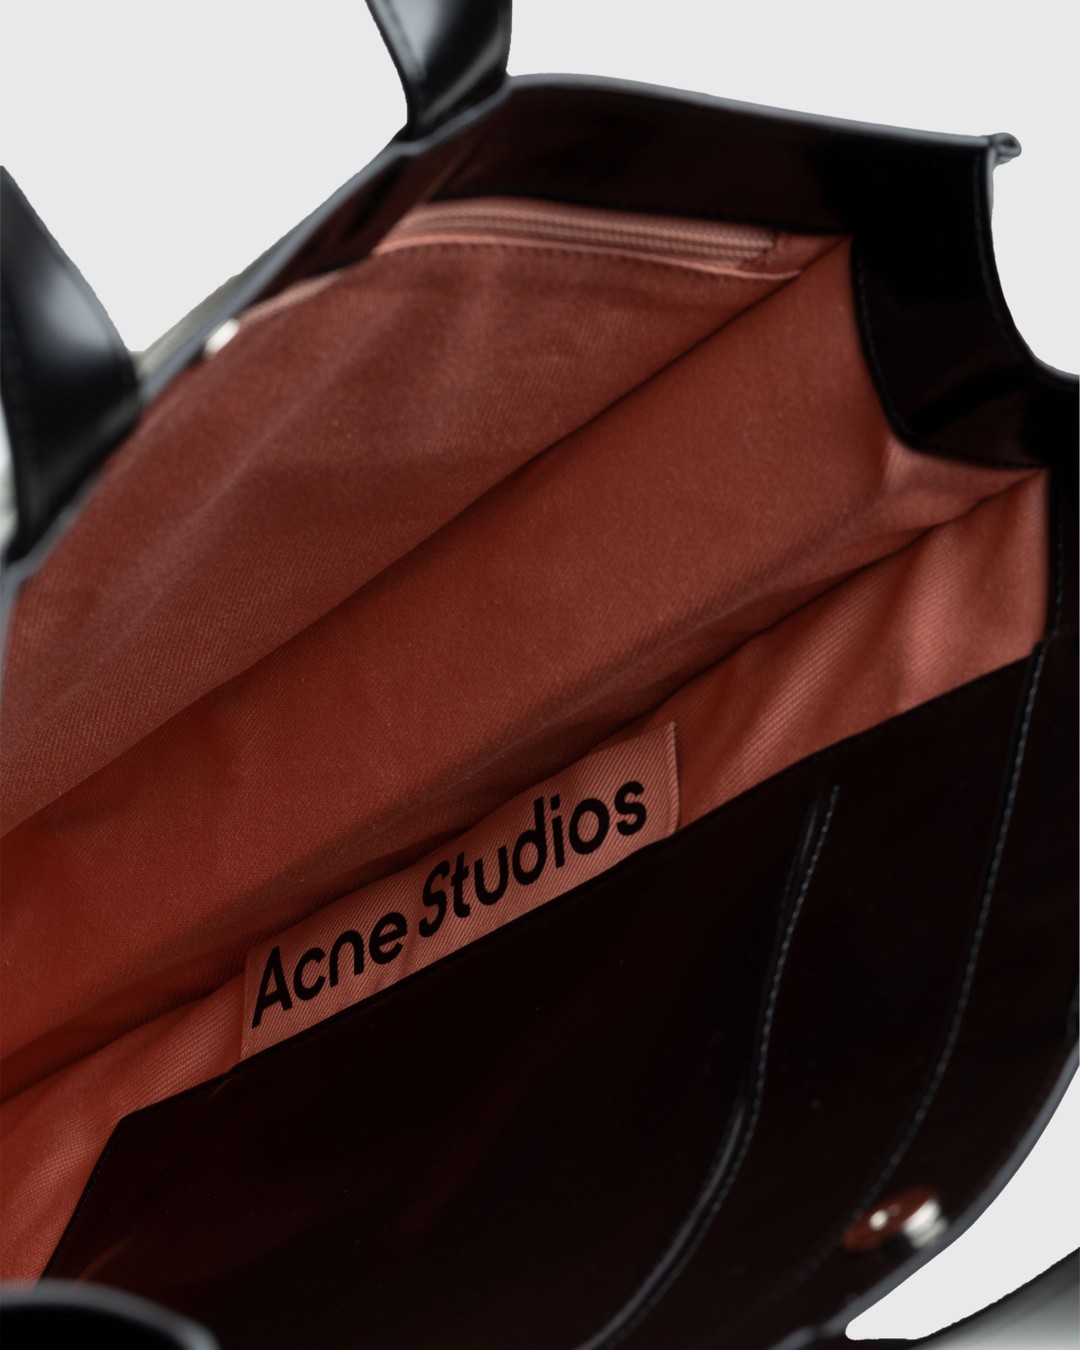 Acne Studios – Logo Tote Bag Black - Bags - Black - Image 5